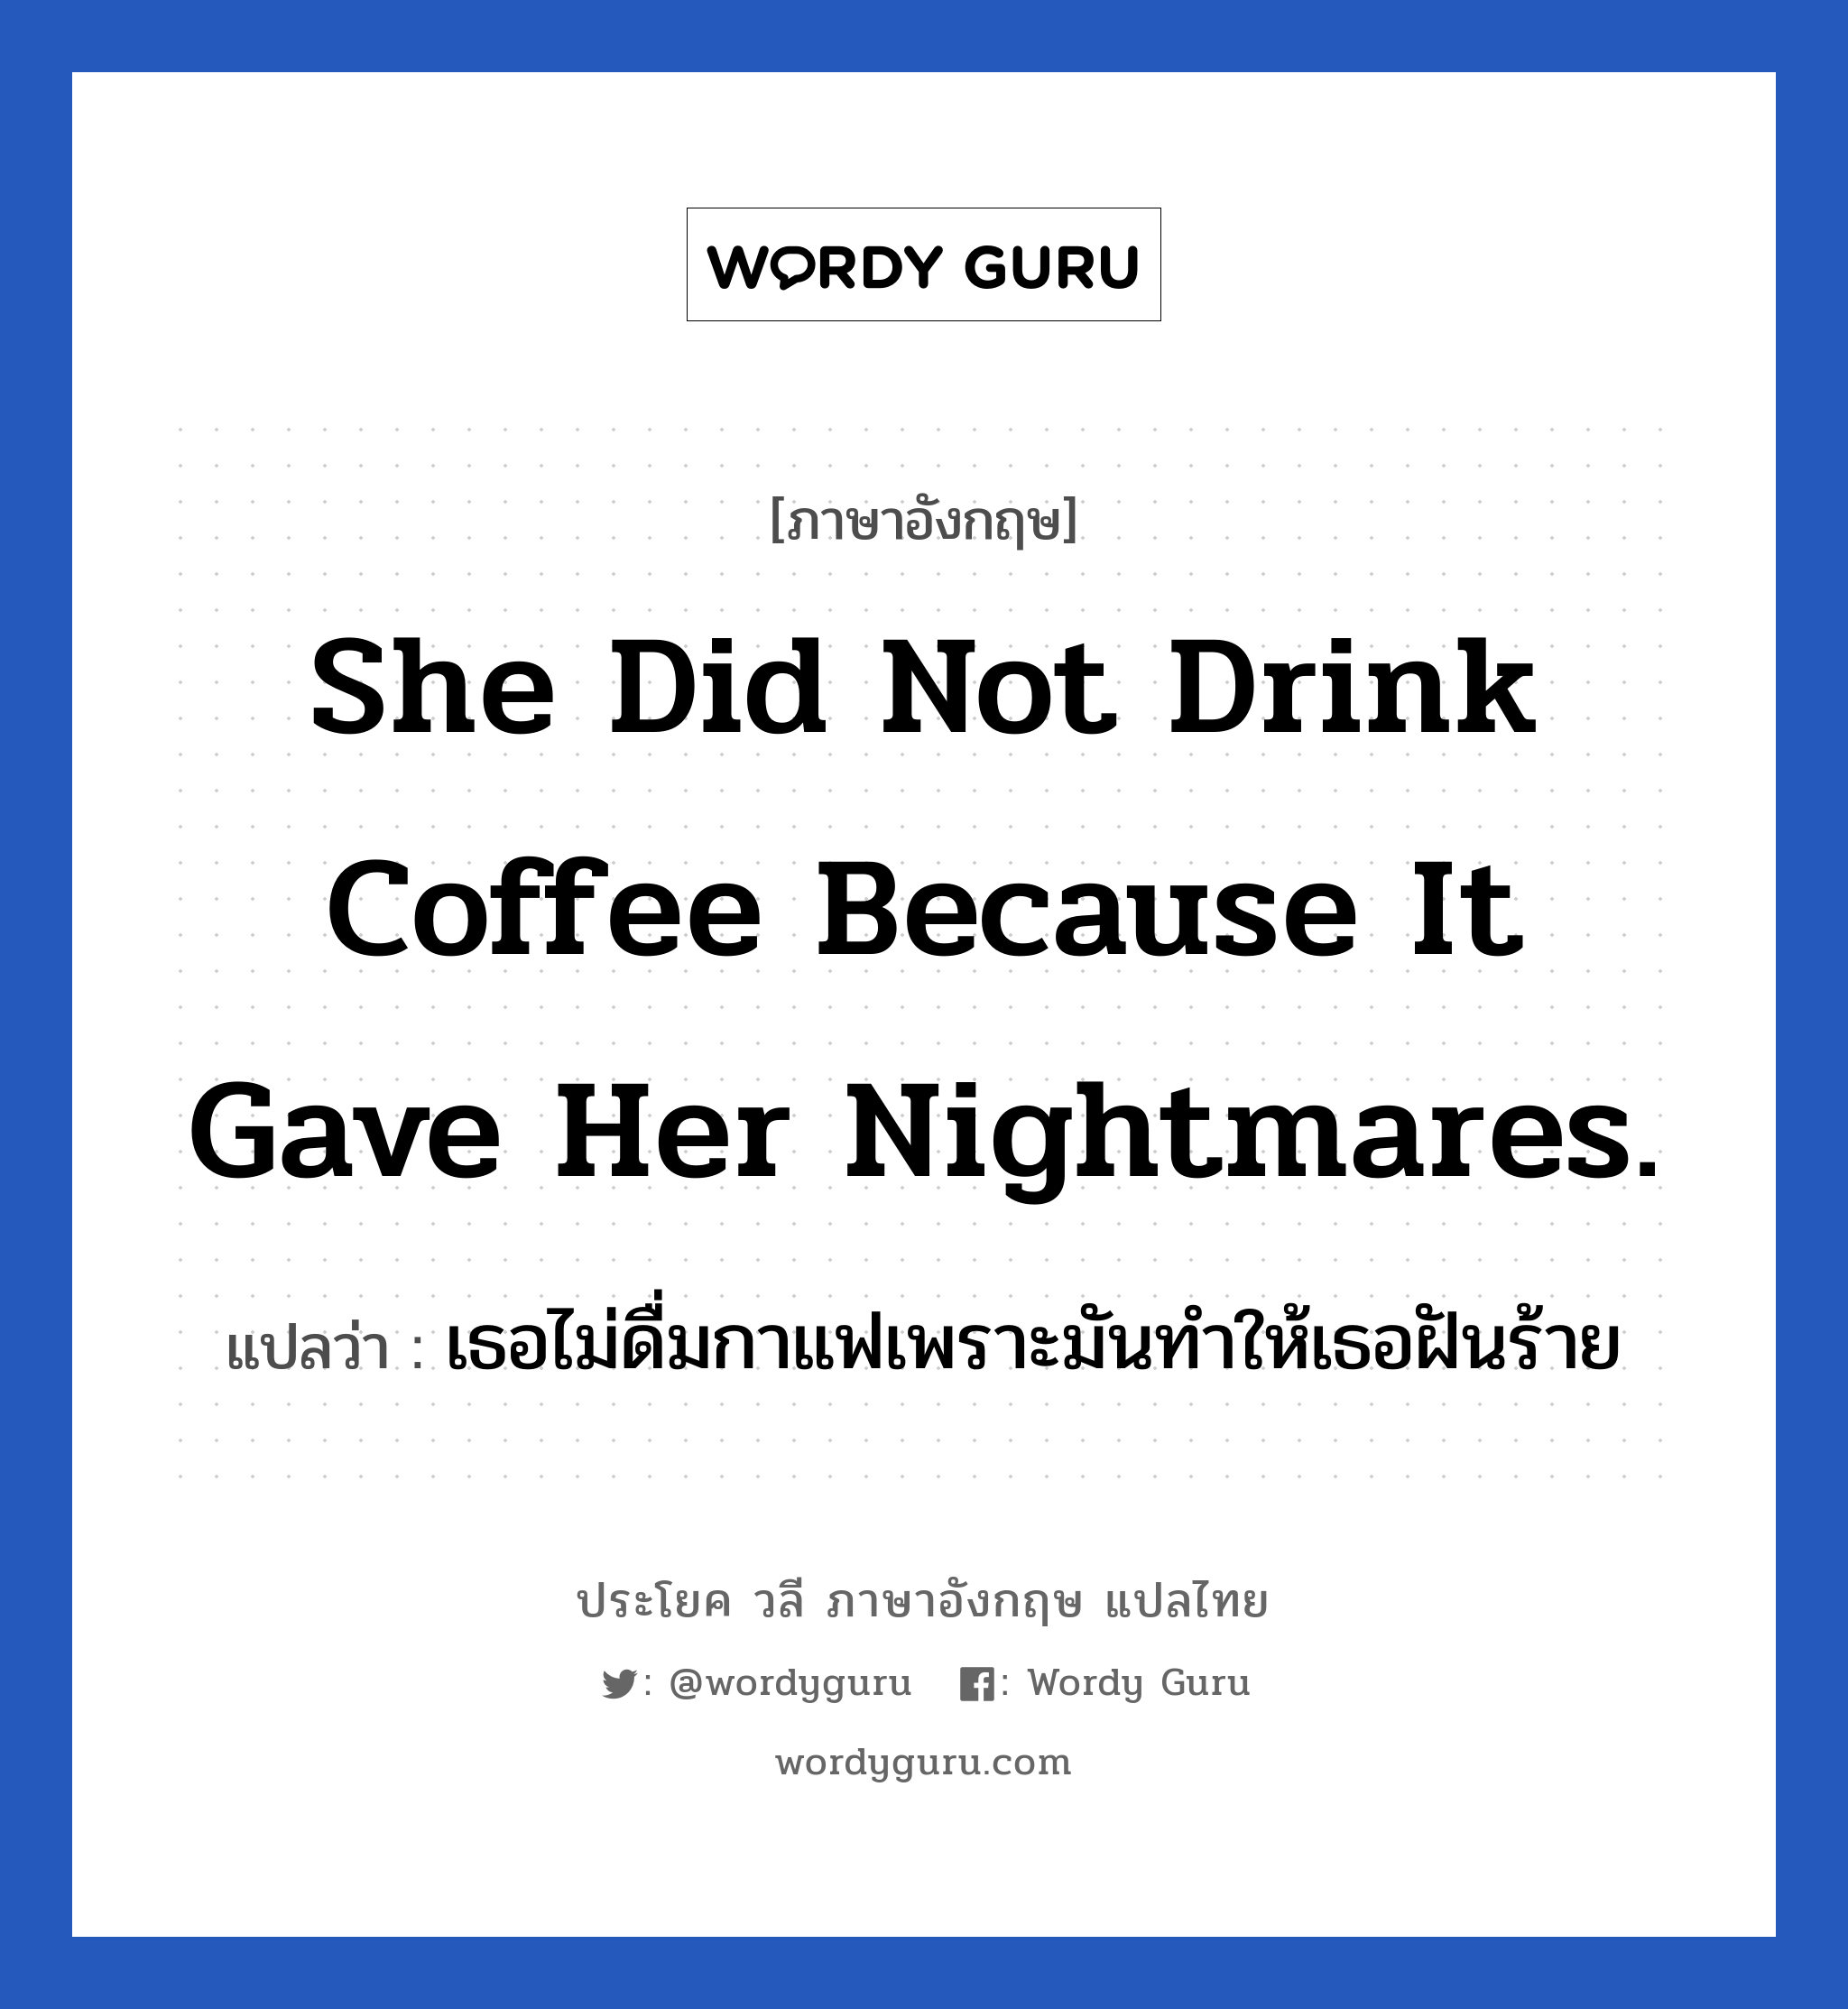 เธอไม่ดื่มกาแฟเพราะมันทำให้เธอฝันร้าย ภาษาอังกฤษ?, วลีภาษาอังกฤษ เธอไม่ดื่มกาแฟเพราะมันทำให้เธอฝันร้าย แปลว่า She did not drink coffee because it gave her nightmares.